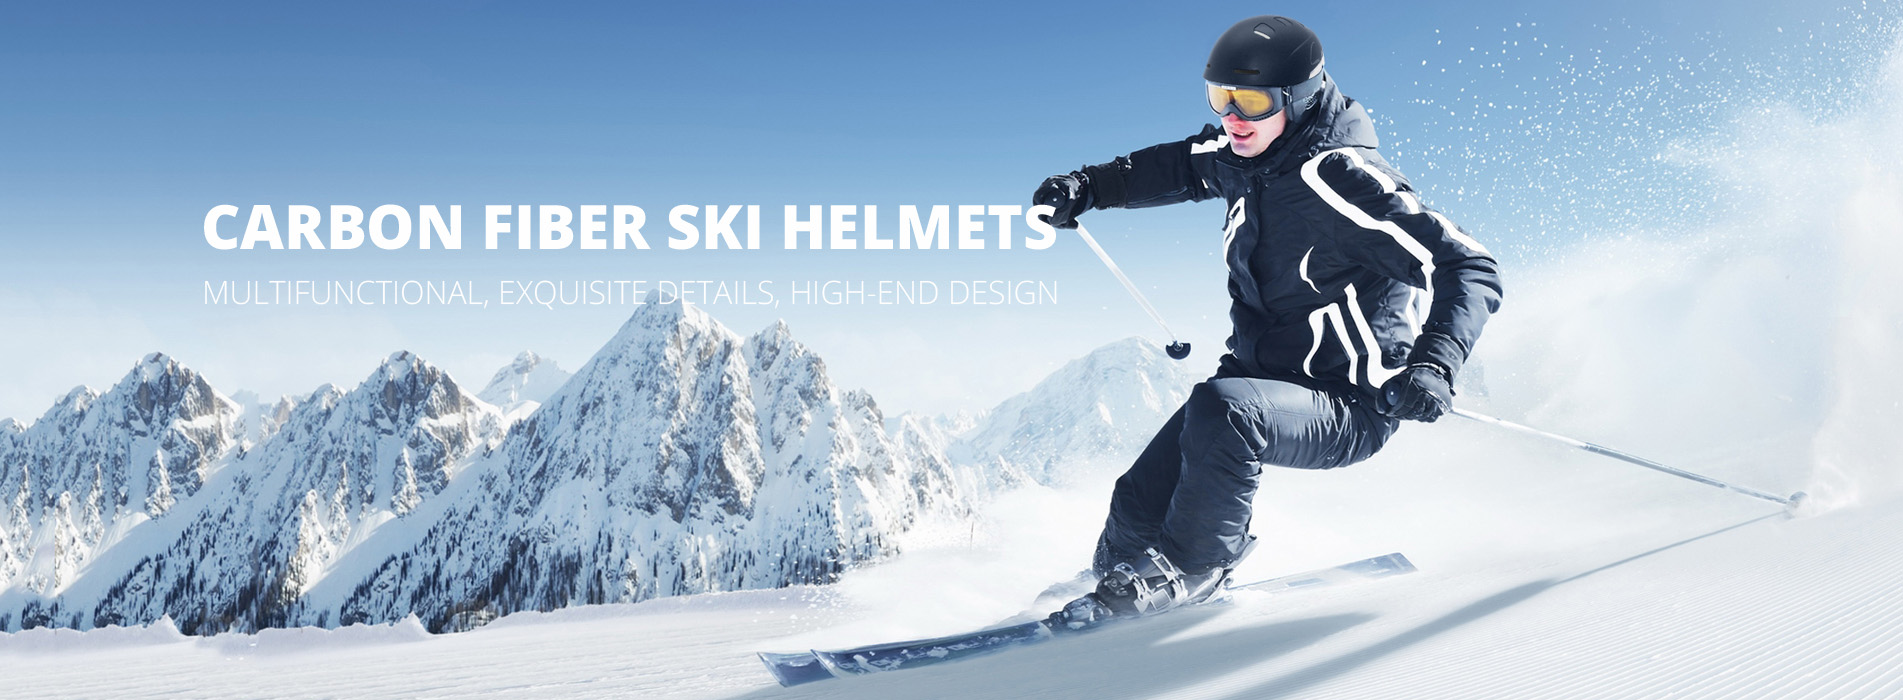 ski helmet s09 banner